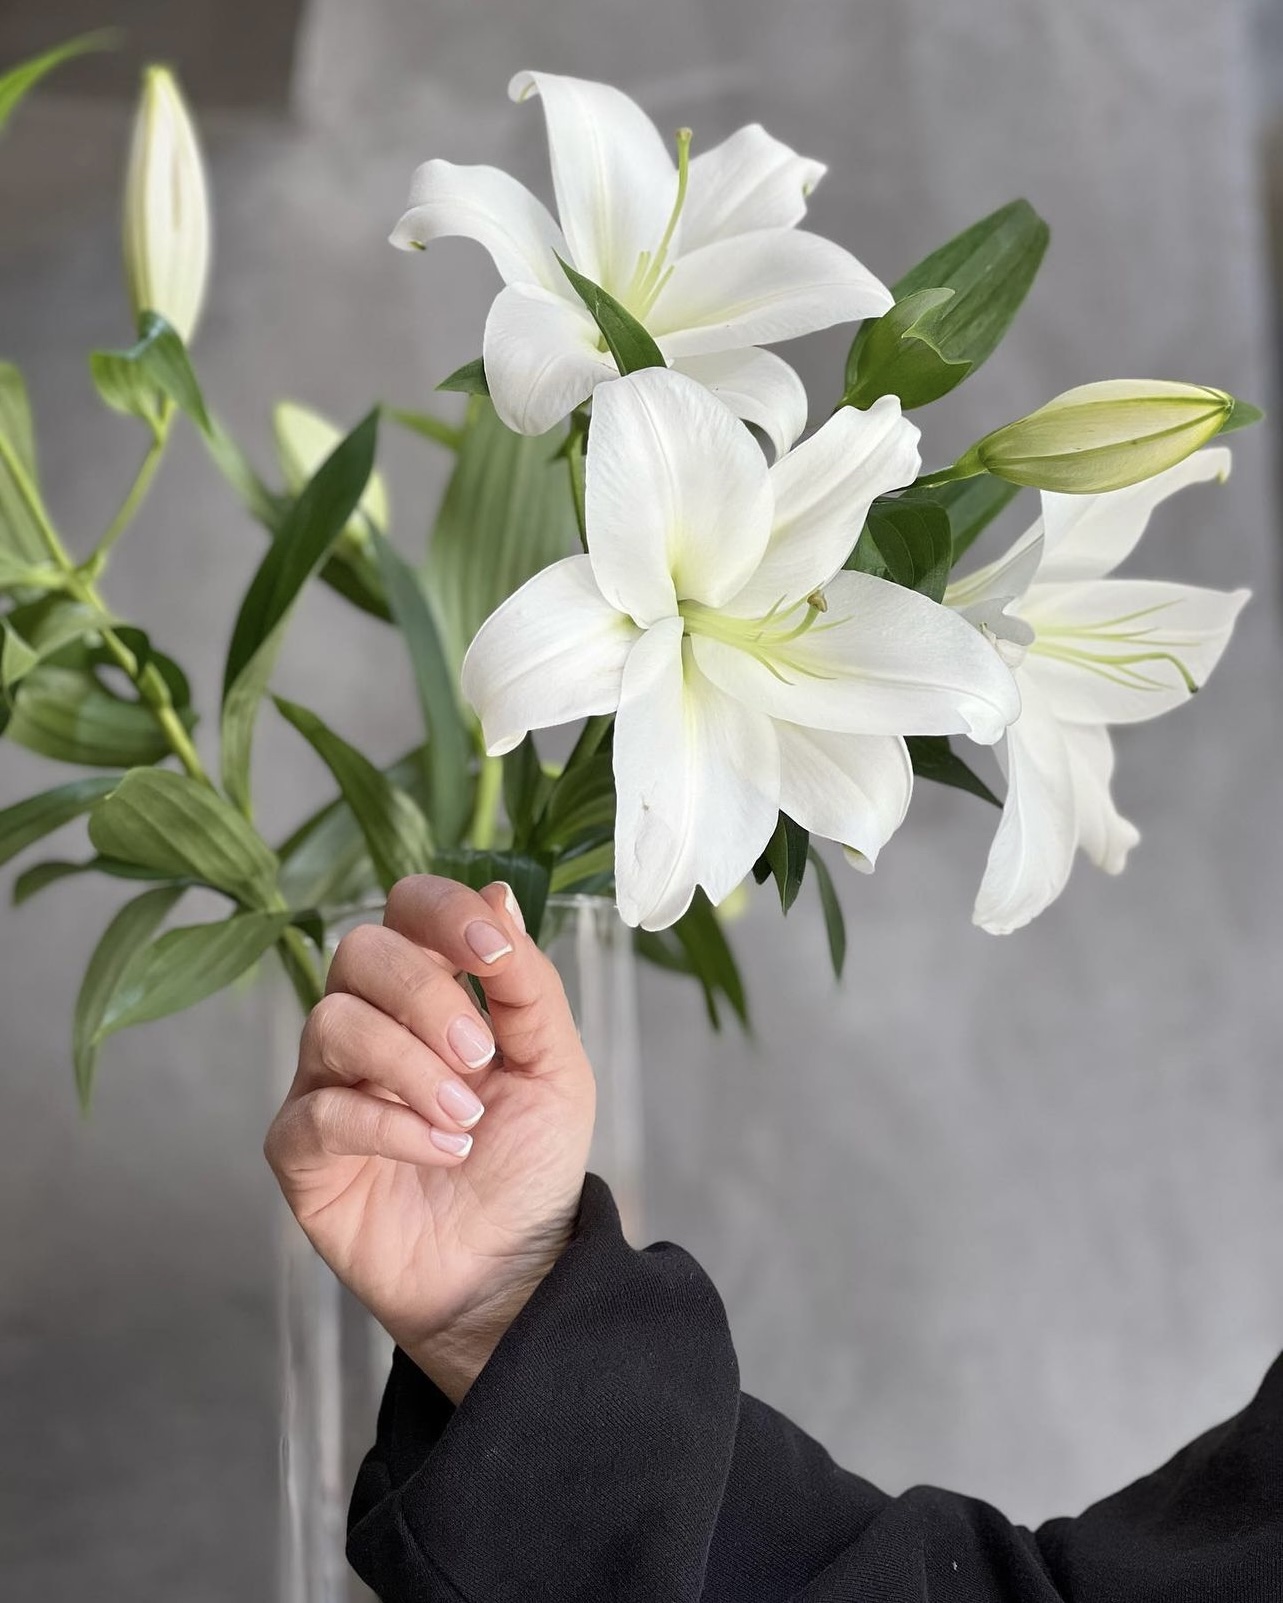 Βάζο με λευκά lilium και ένα γυναικείο χέρι με κομψό γαλλικό μανικιούρ